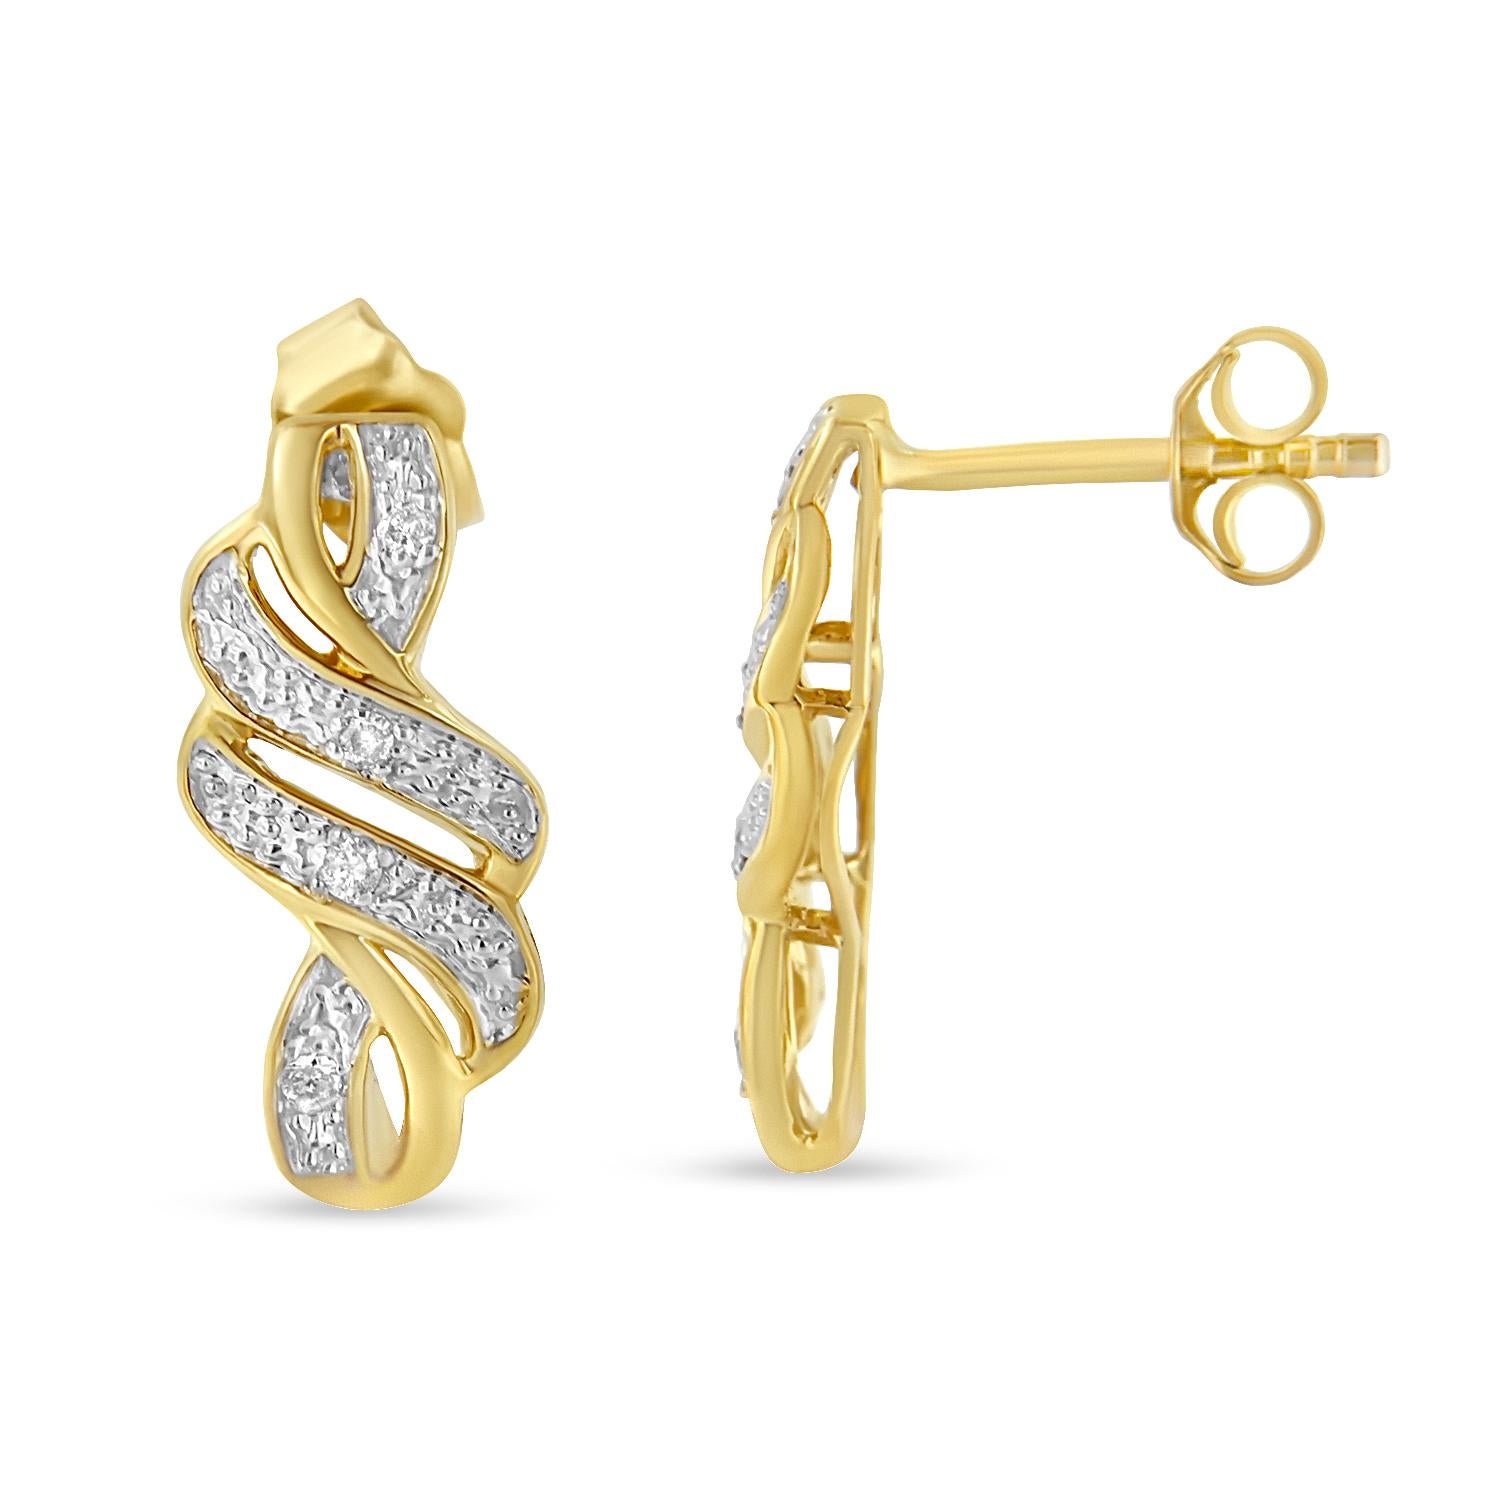 In diesen eleganten und raffinierten Ohrringen fließen zarte Bänder zu einem Wirbeleffekt. die Bänder sind mit 1/10ct TDW schillernden Diamanten im Brillantschliff besetzt. Dieses Design aus 10-karätigem, vergoldetem Sterlingsilber und mit einem